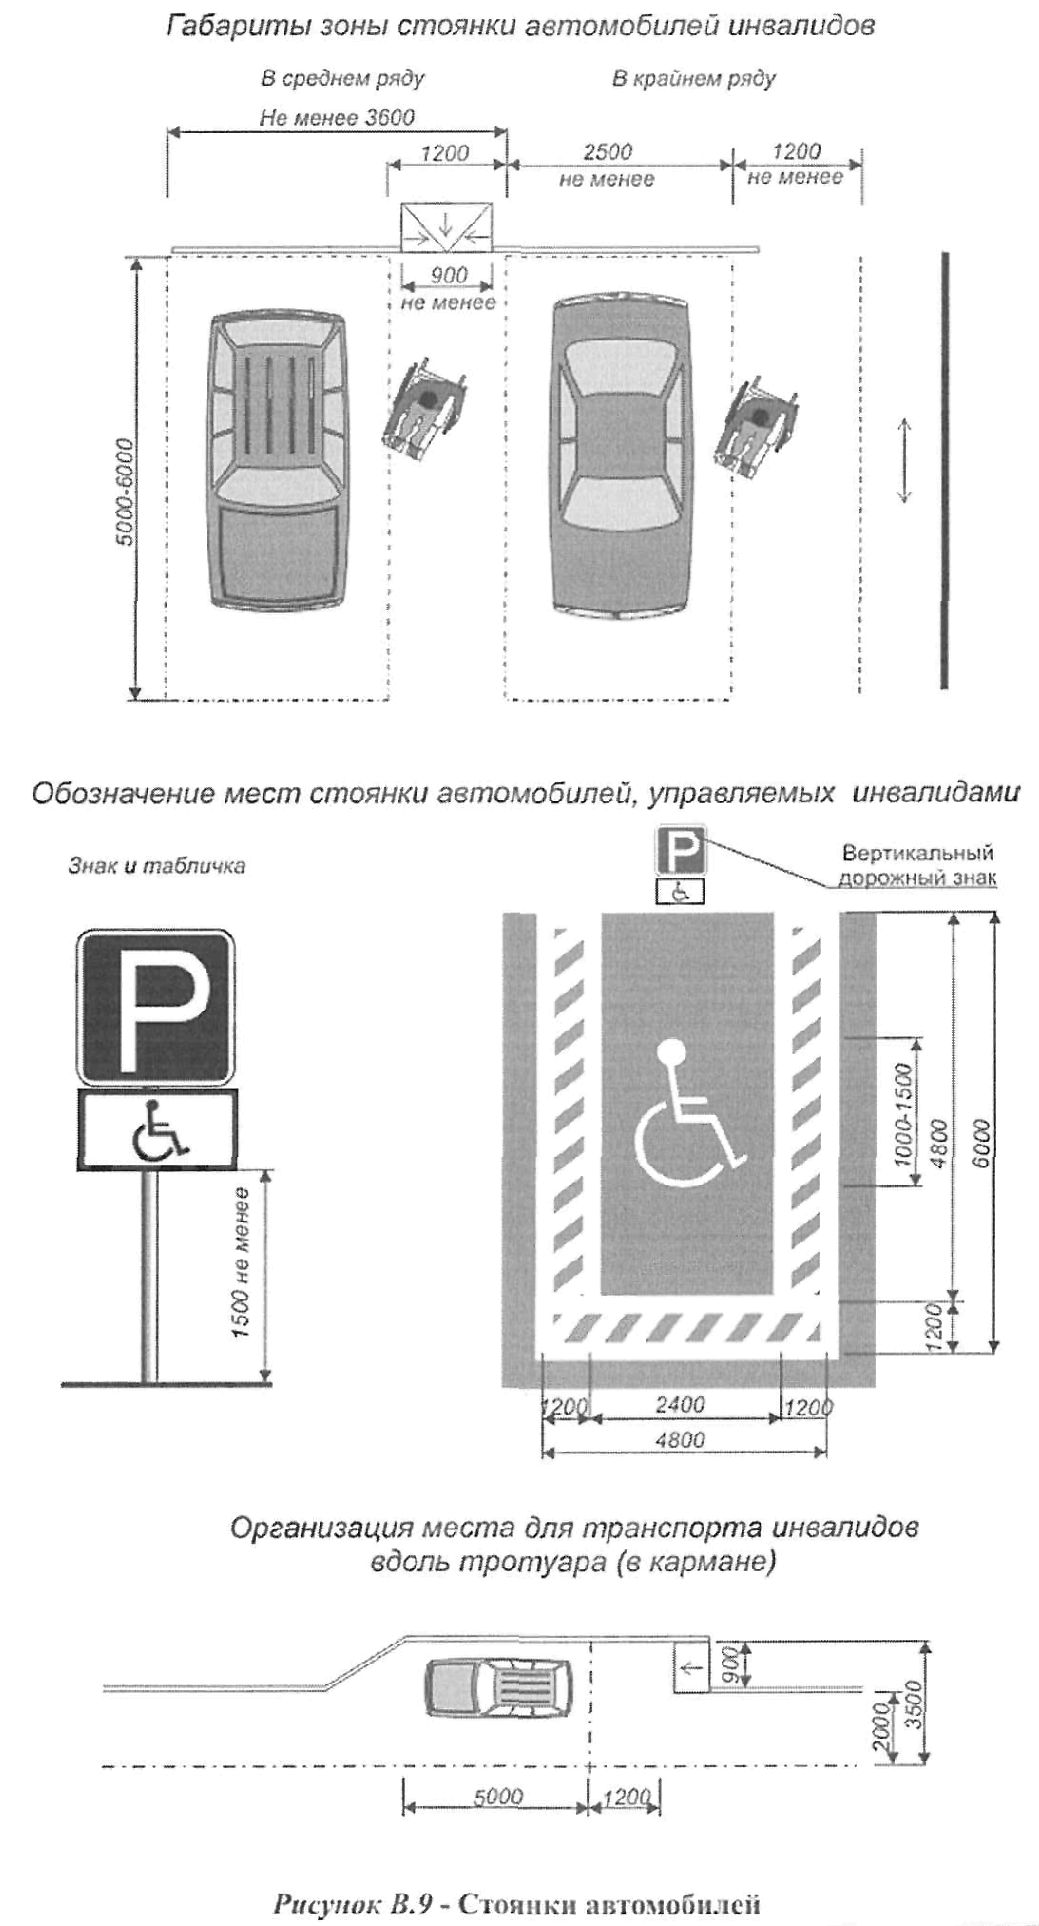 Ширина парковочного места для инвалидов по ГОСТУ. Разметка «парковка для МНГ». Установка знака парковка для инвалидов